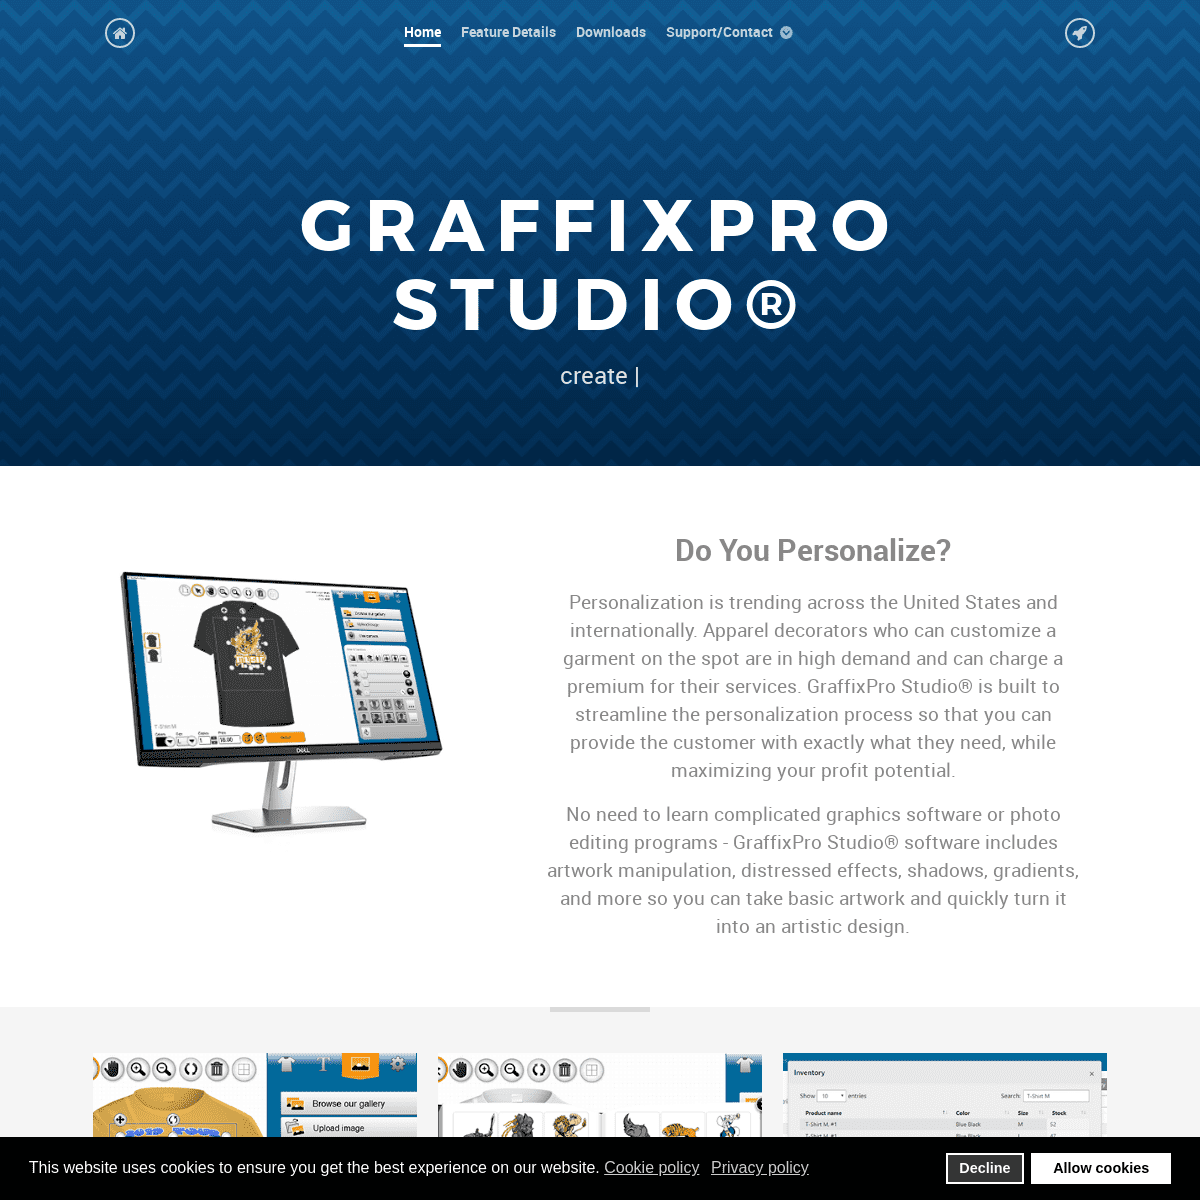 A complete backup of graffixprostudio.com